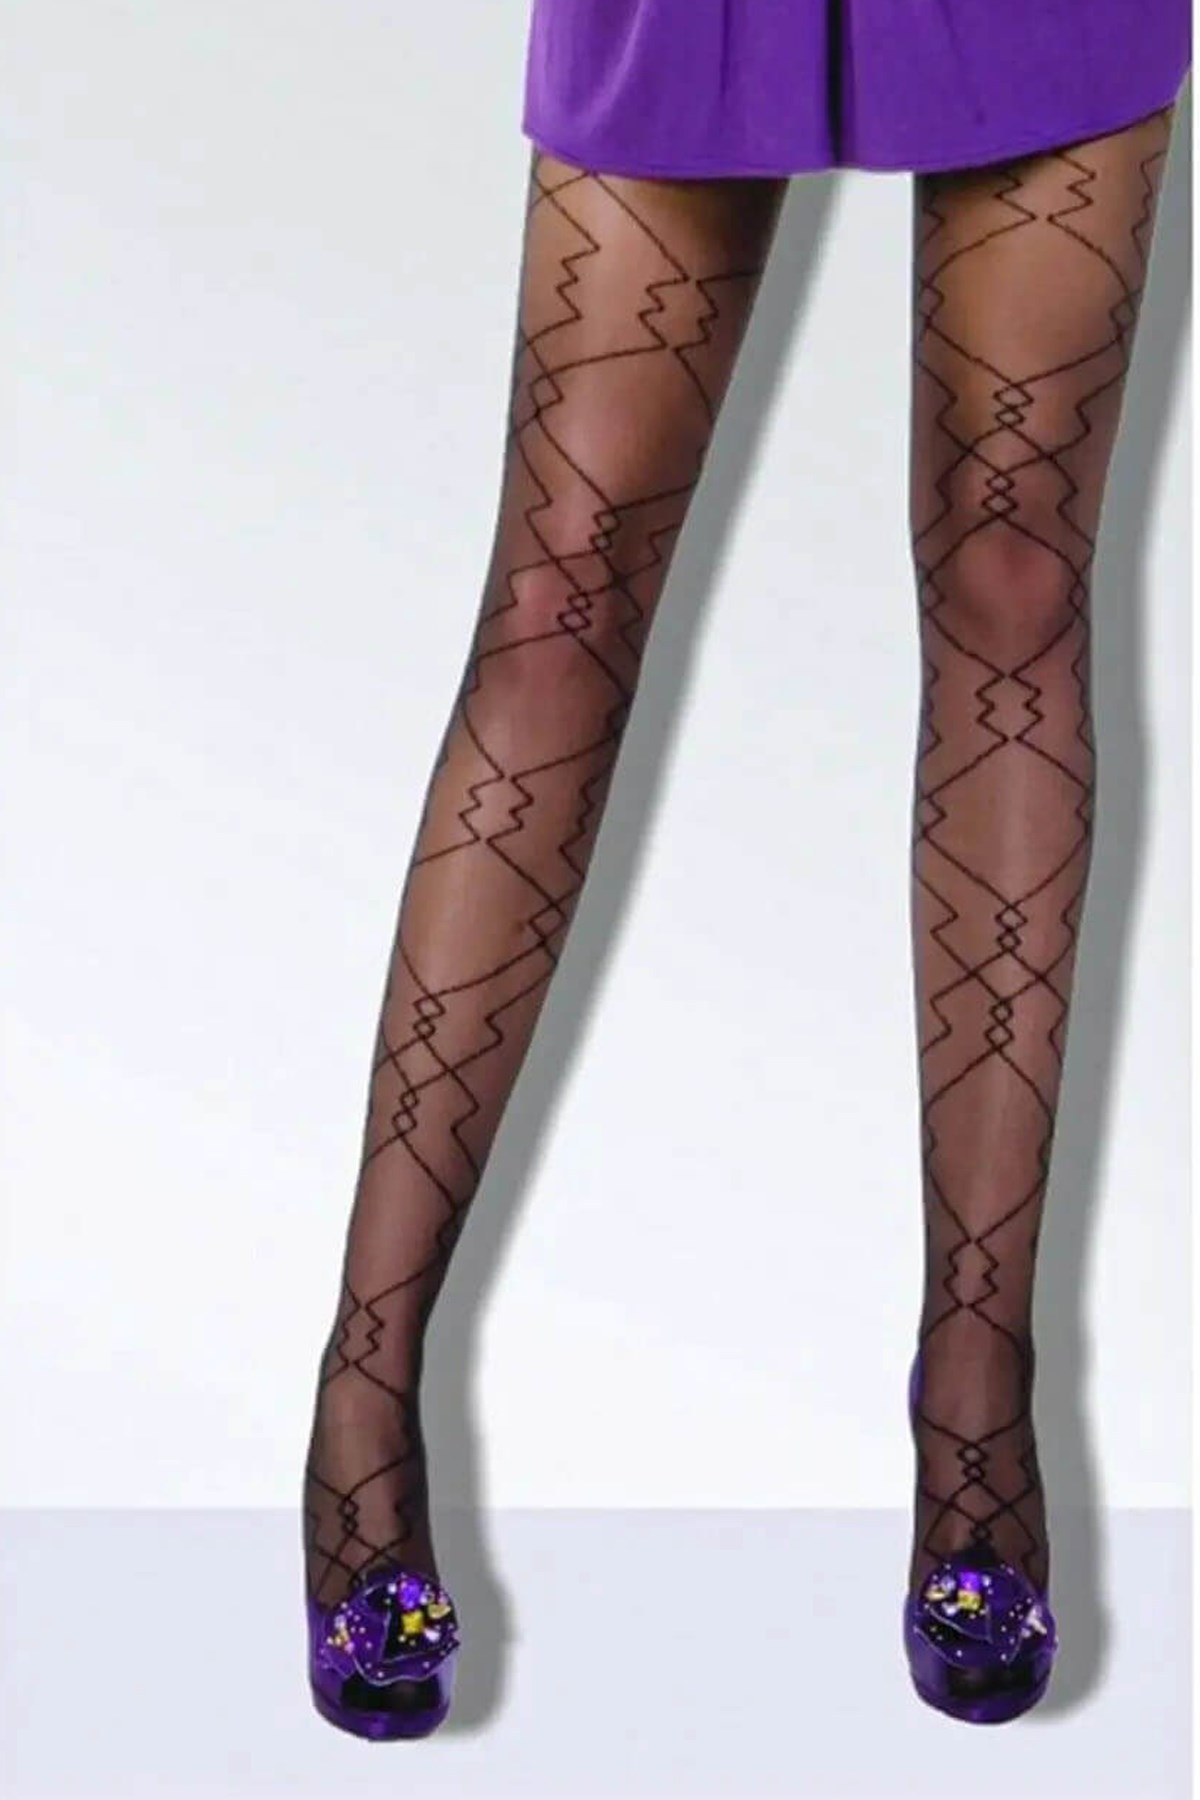 Daymod Kadın Regina Desenli Külotlu Çorap Yeni Sezon! Moda! Ürünler  Rakipsiz Fiyatlar İç Giyim, Ev Tekstili, Kozmetik, Çeyiz ve Daha Fazlası |  yoncatoptan.com